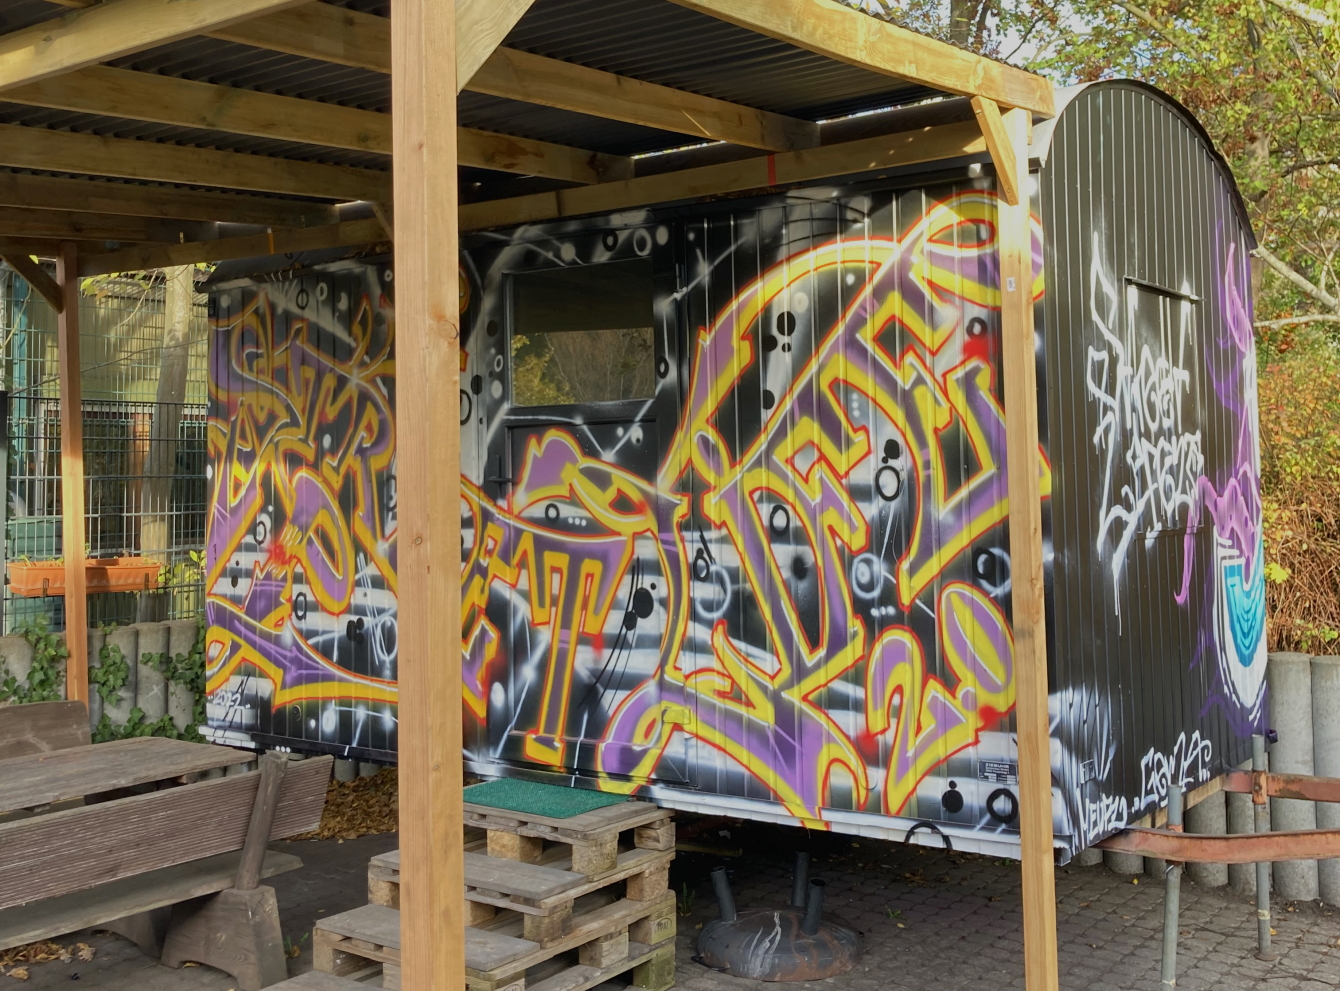 Die Seitenwand eines Bauwagens, mit einem ansprechenden Graffiti gestaltet.